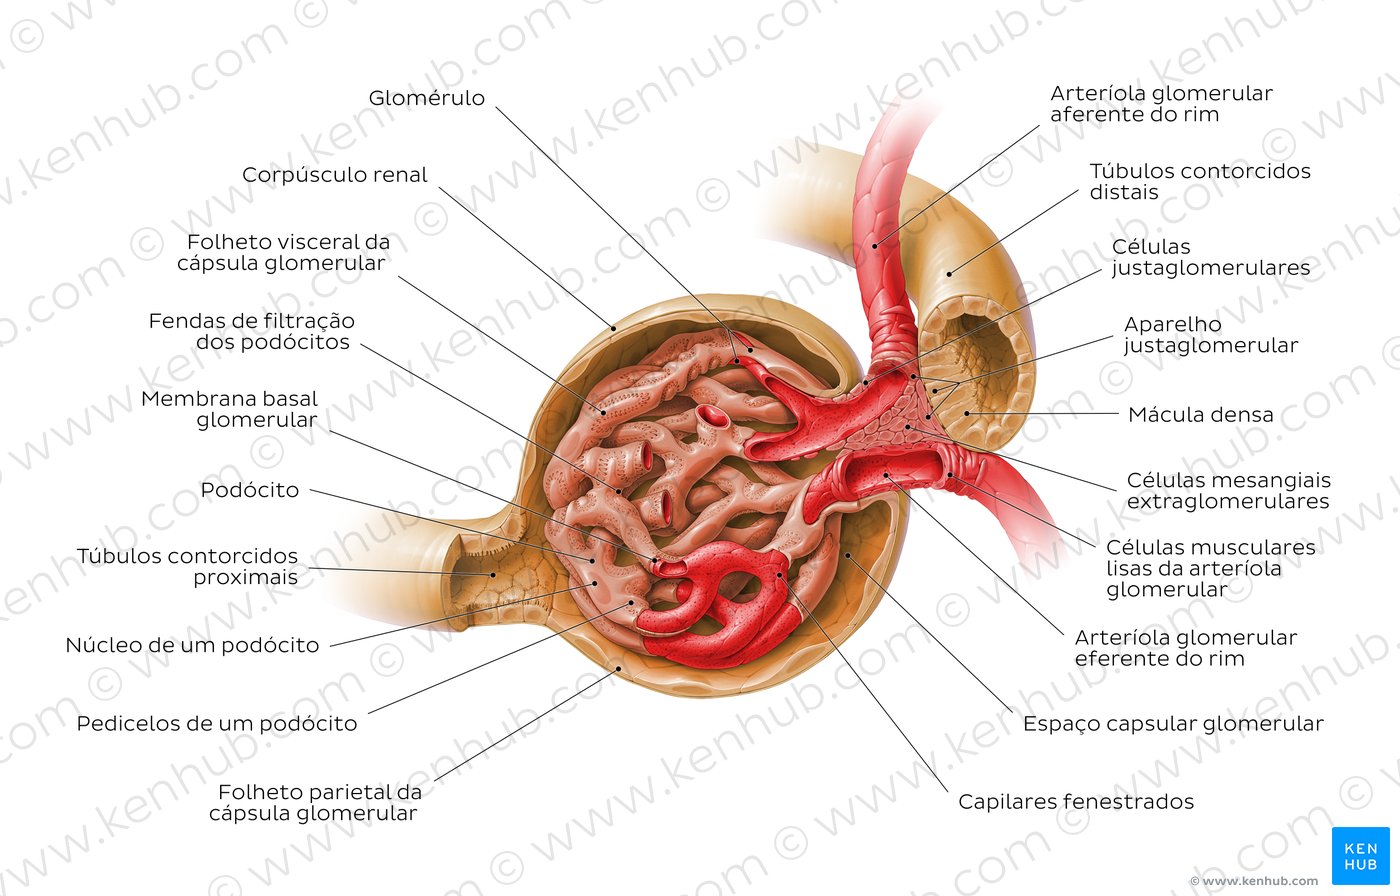 Corpúsculo renal e aparelho justaglomerular - Visão geral